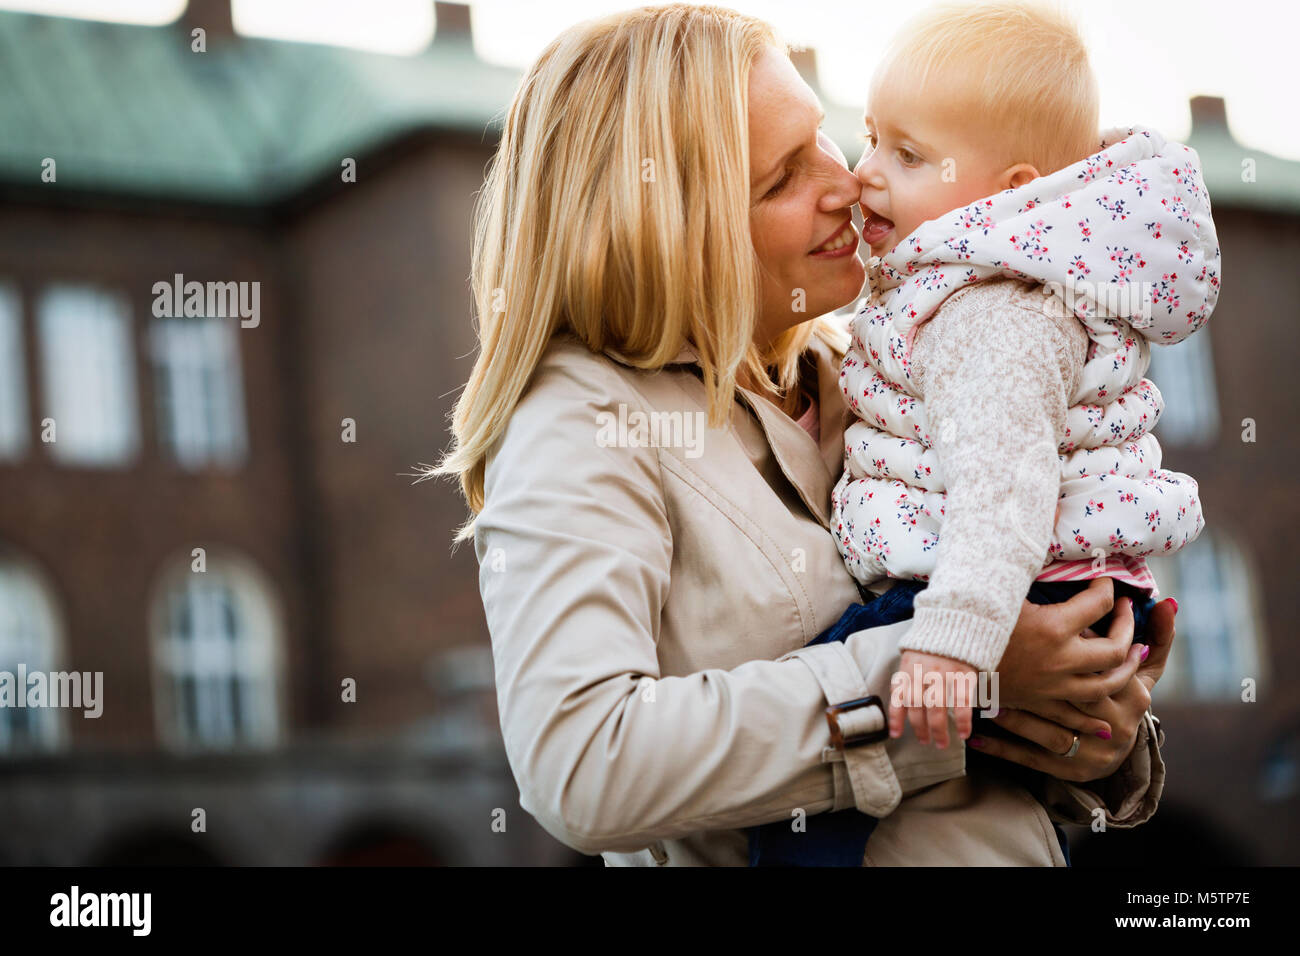 Happy Family moments de maman et bébé. La maternité et les soins. Banque D'Images